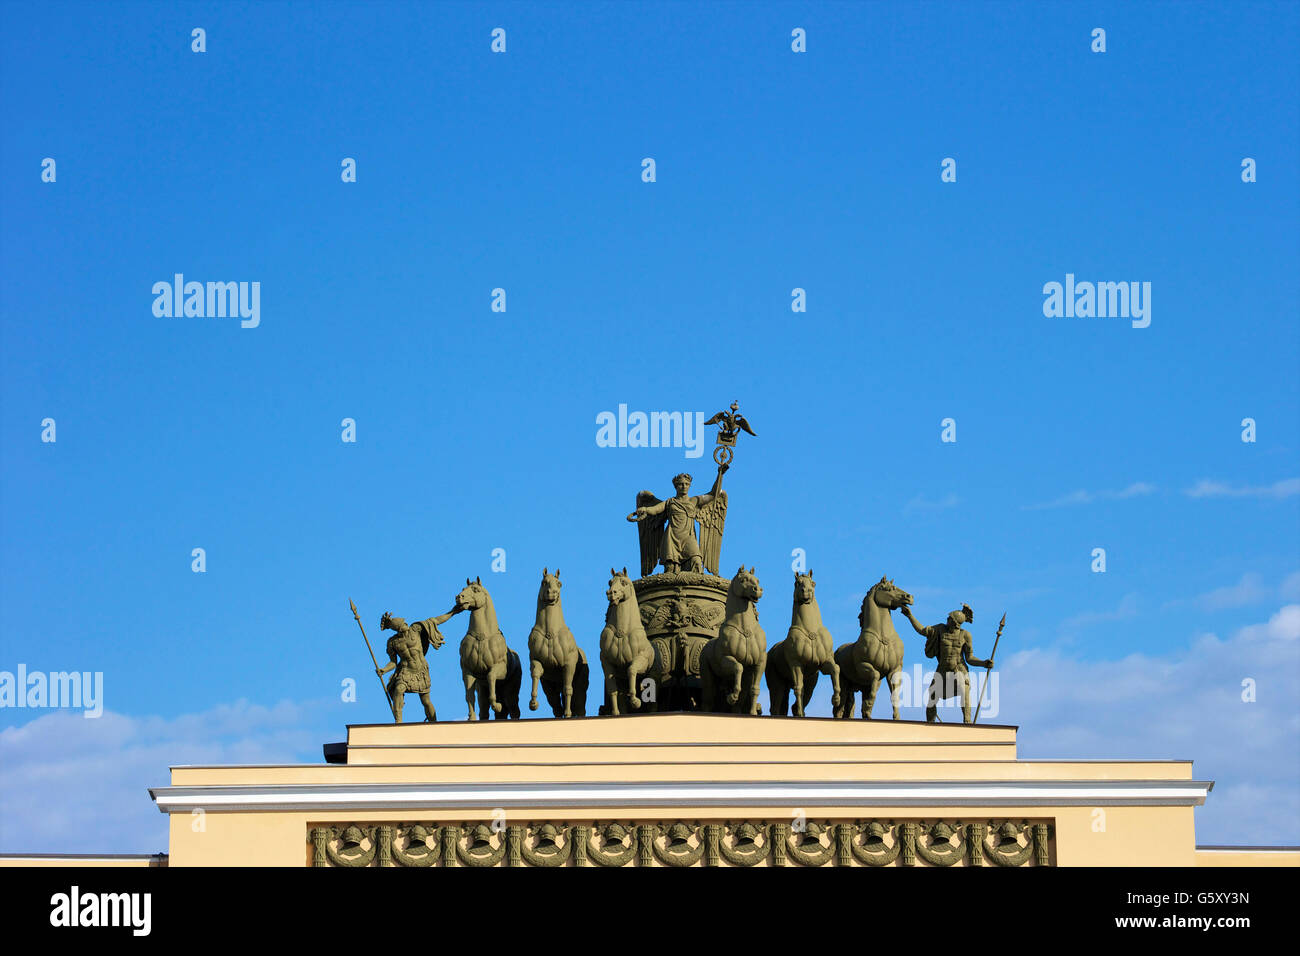 La Victoire de Samothrace dans un char, major général des capacités, de la place du palais, Saint Petersbourg, Russie Banque D'Images